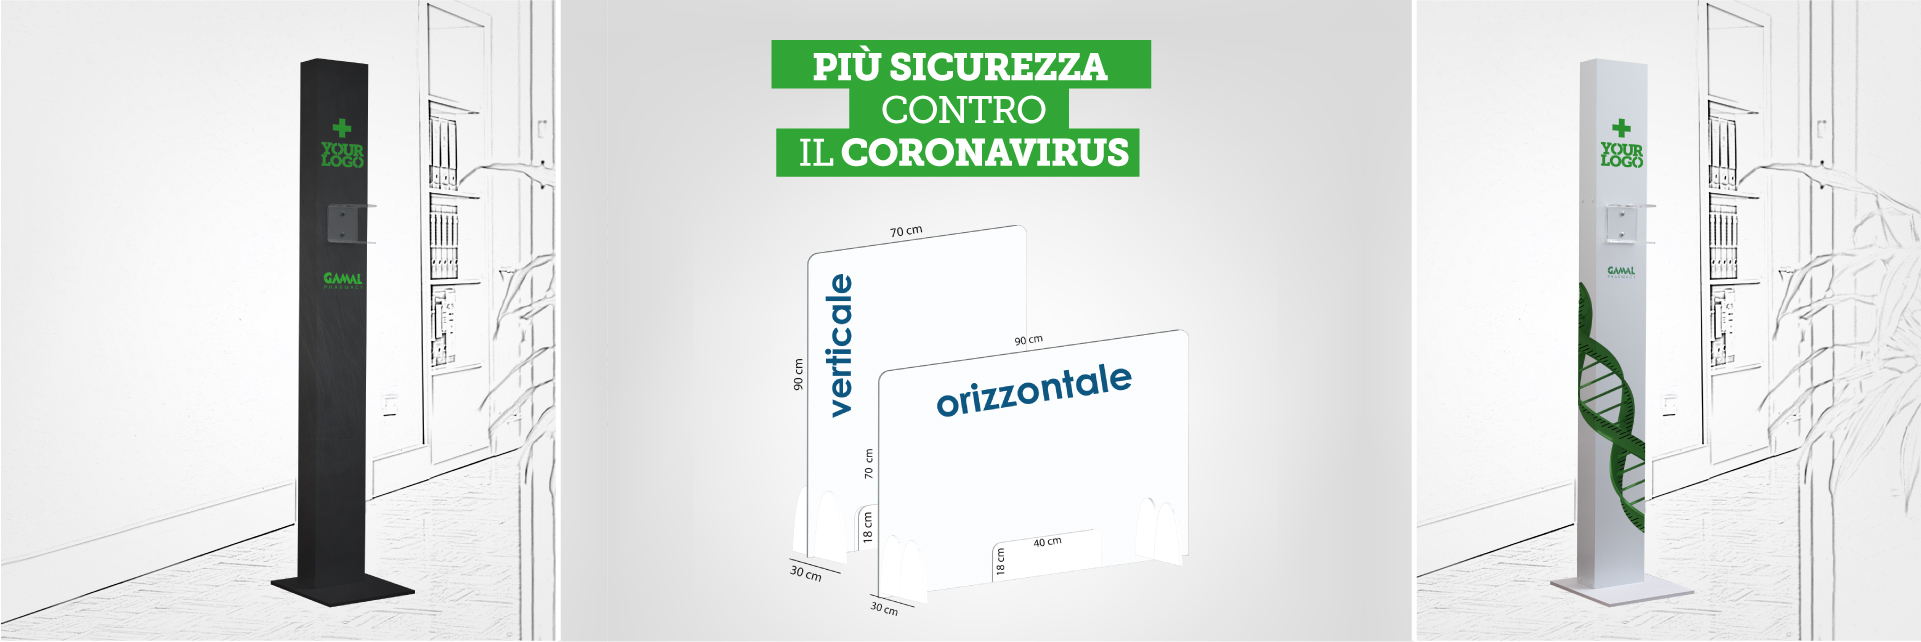 dispositivi di prevenzione coronavirus per farmacie e negozi: parafiato in plexiglass e dispenser igienizzante mani